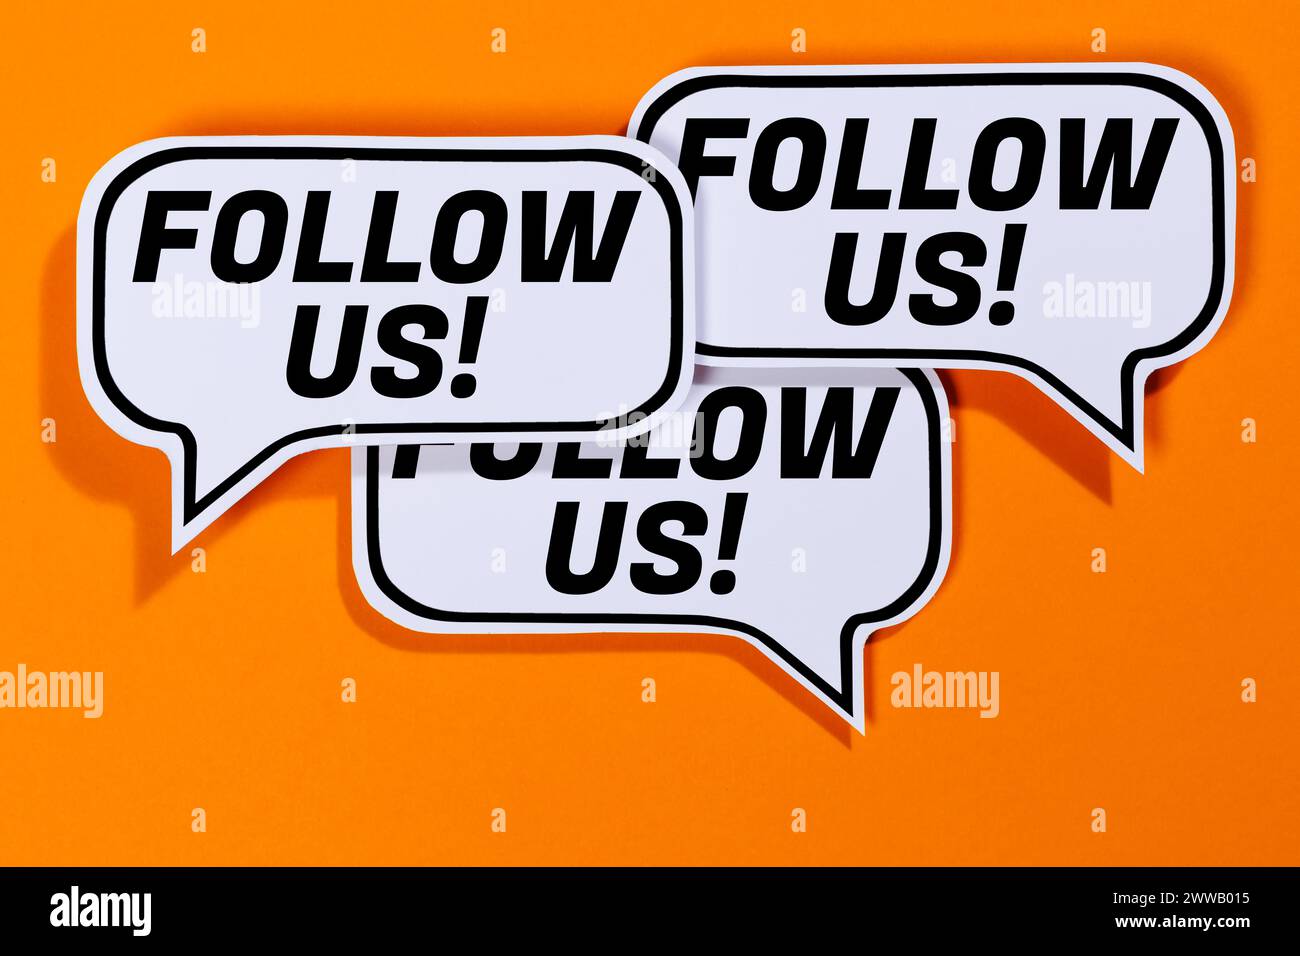 Follow US Follower Fans mögen soziale Netzwerke Medien Internet in Sprechblasen Kommunikation Geschäftskonzept Orange Stockfoto